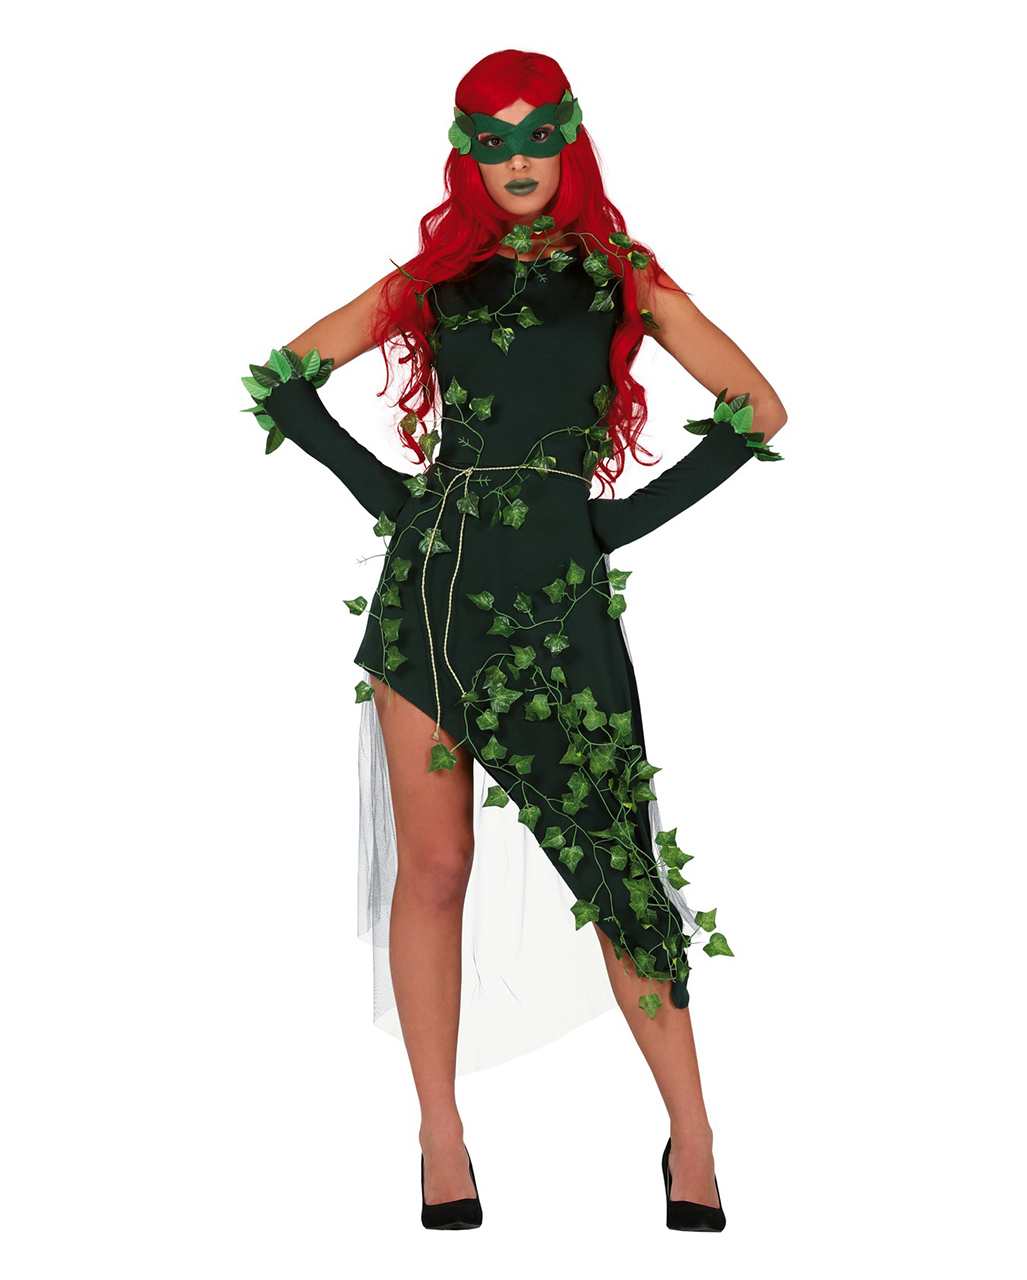 Naturgöttin Ivy Damen Kostüm mit Maske hier kaufen M von Horror-Shop.com